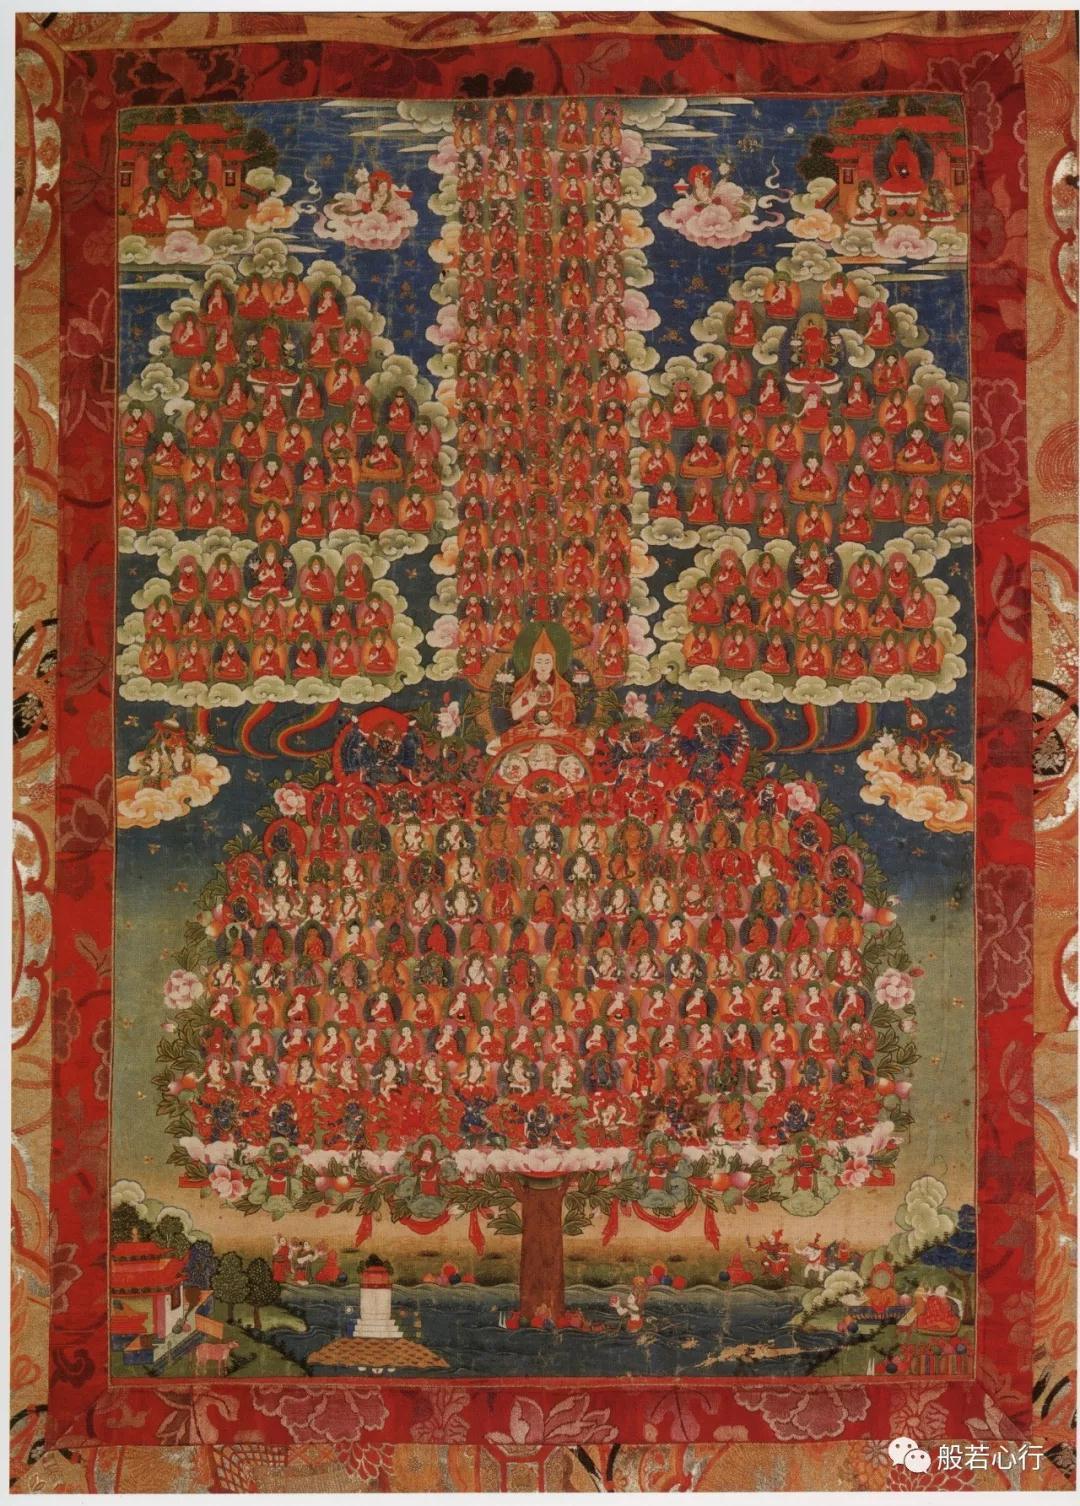 宗喀巴大师的庇护界(<喇嘛曲巴>)(全)—《极乐之轮:佛教冥想艺术》